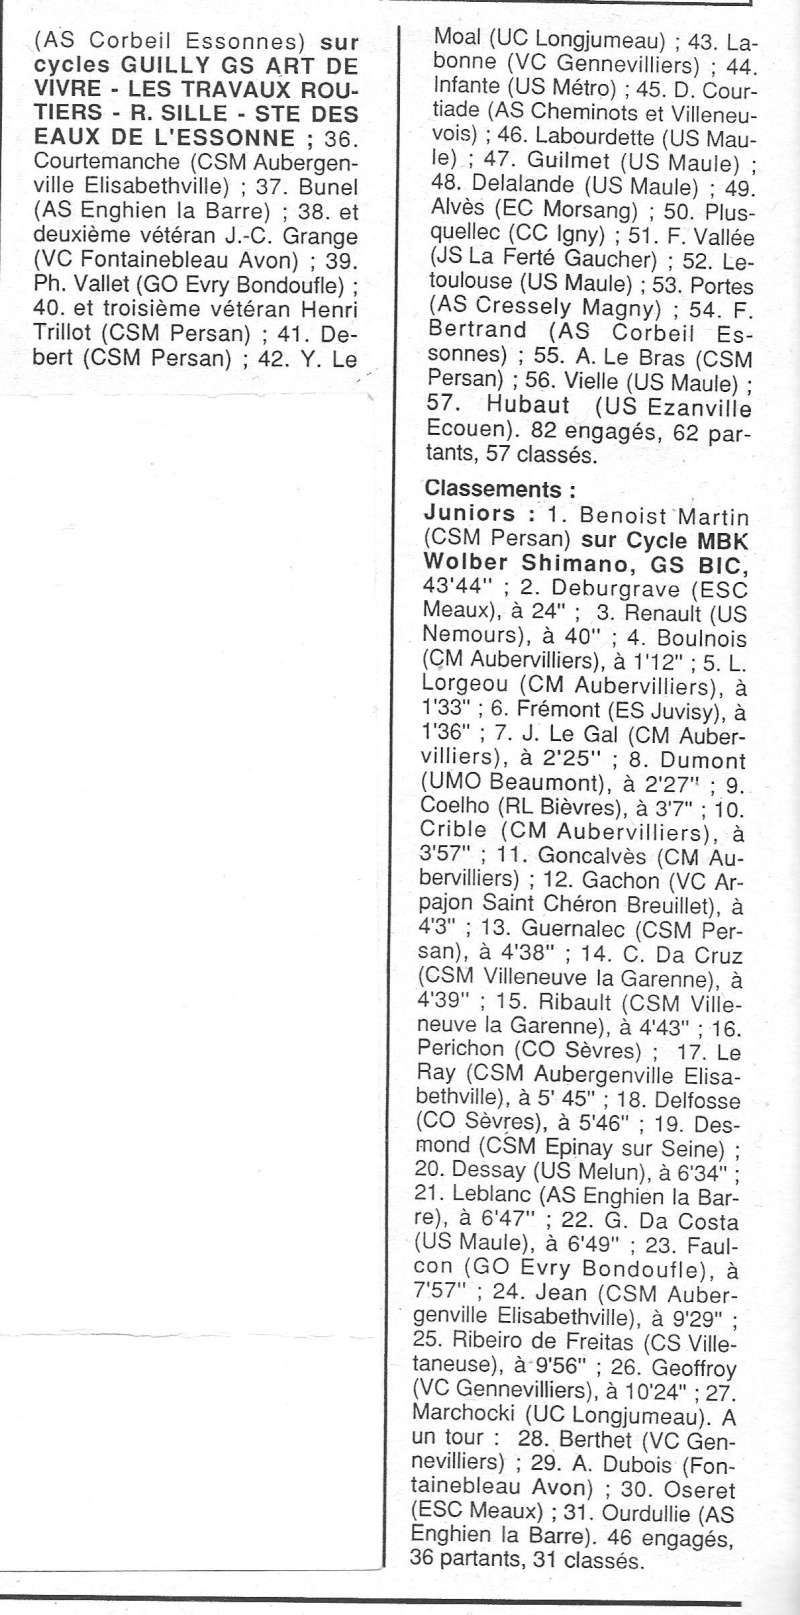   CSM.Persan. BIC. Toute une époque de janvier 1990 à novembre 2007 - Page 7 1991_079